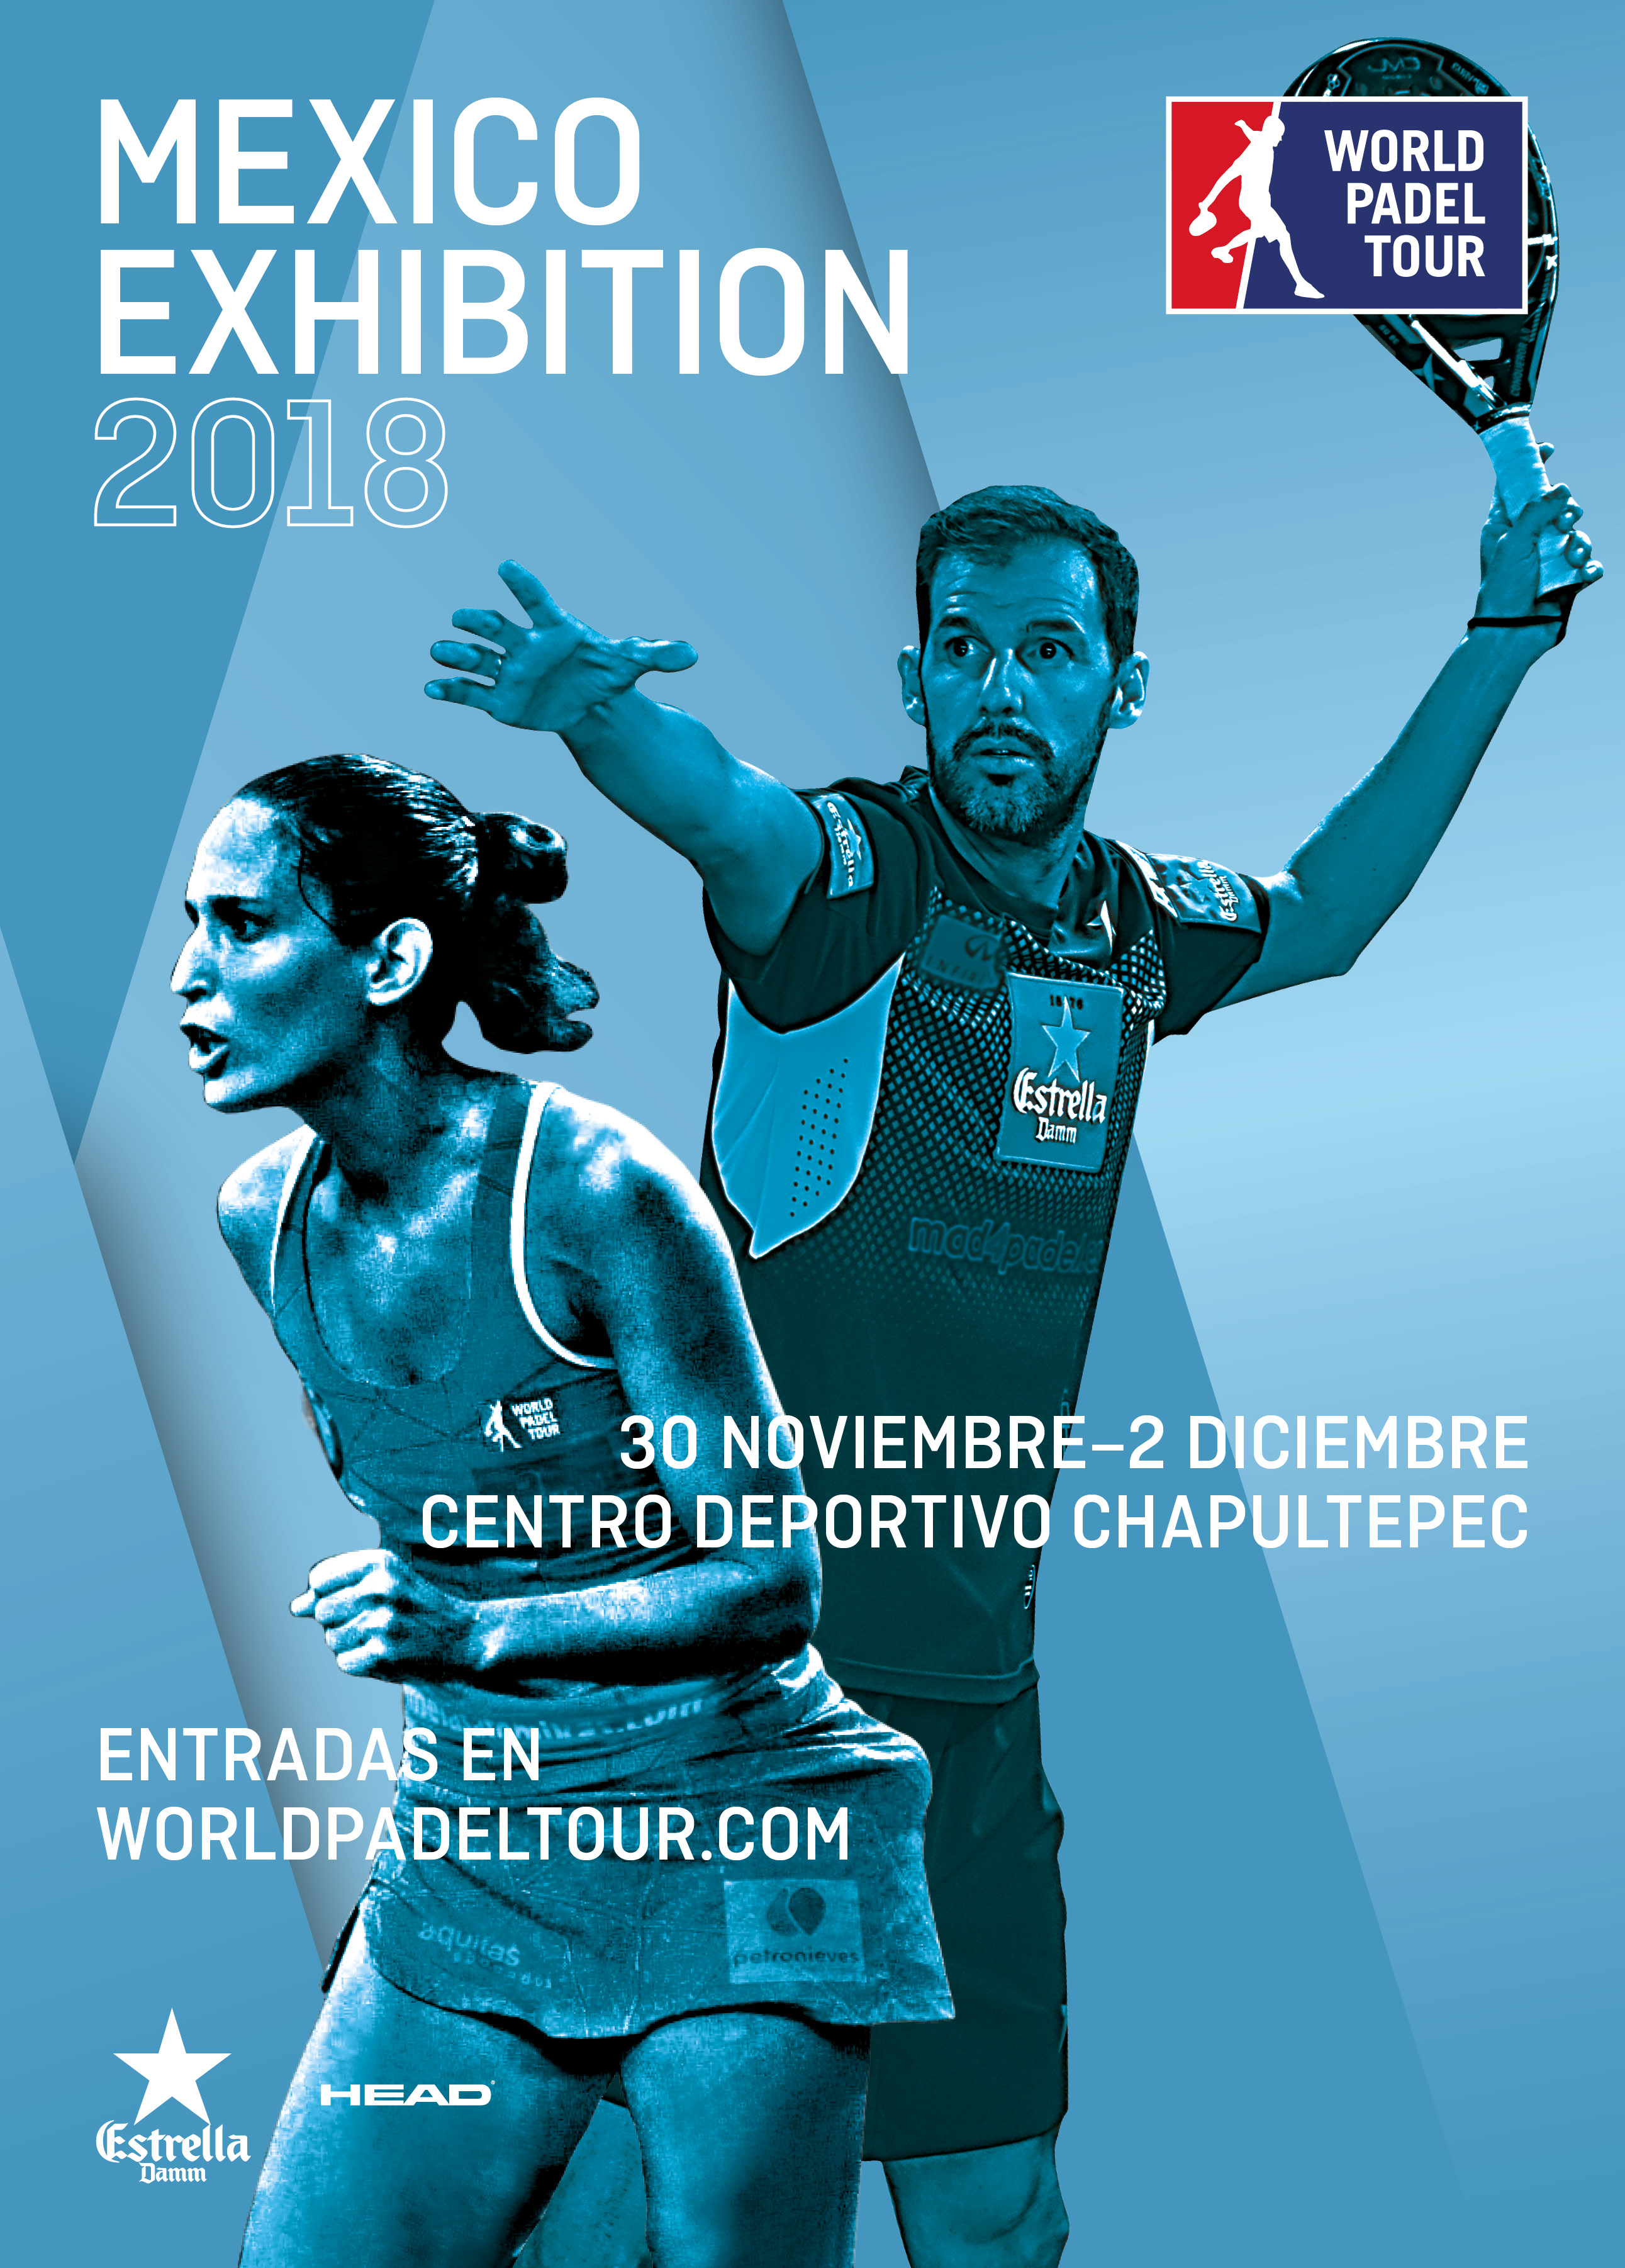 México Exhibition 2018